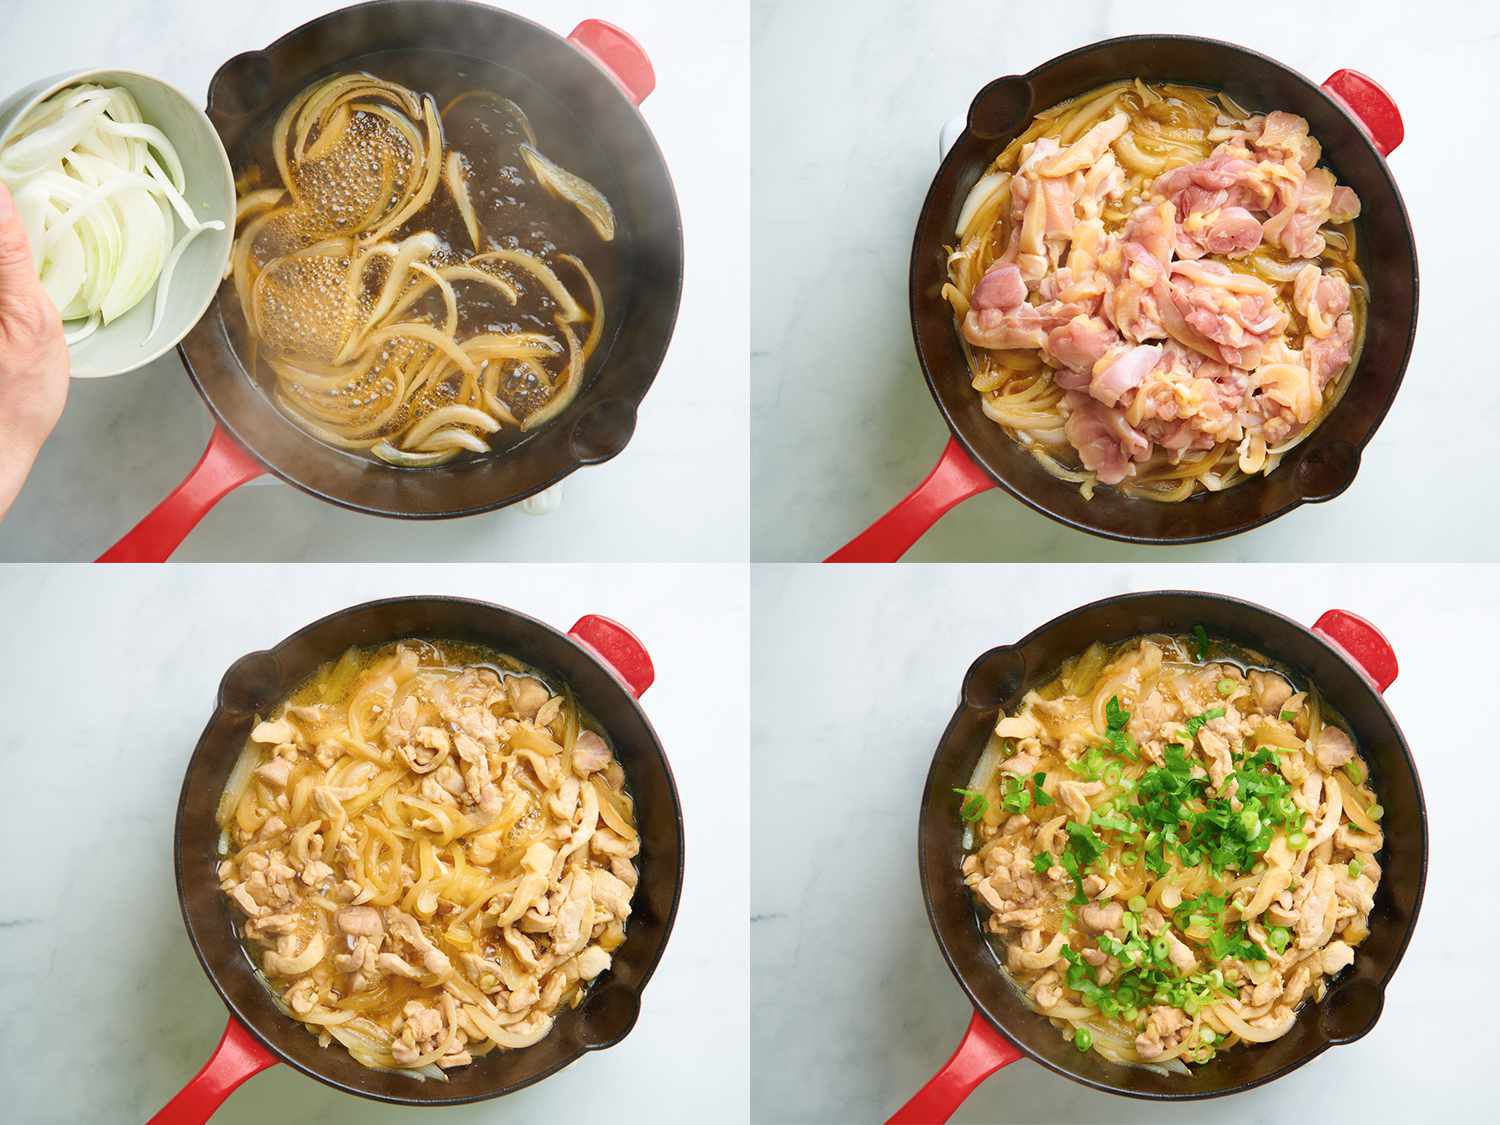 四幅拼贴画，展示了最初的日式日式鱼的烹饪步骤。左上角的图片显示的是洋葱在肉汤中煮熟。右上方的图片显示的是未煮熟的鸡肉，添加到盛洋葱的锅中。左下角的图片显示了锅里煮好的鸡肉、洋葱和肉汤。右下方的图片显示了煮熟的鸡肉、洋葱和上面撒有葱花的肉汤。gydF4y2Ba